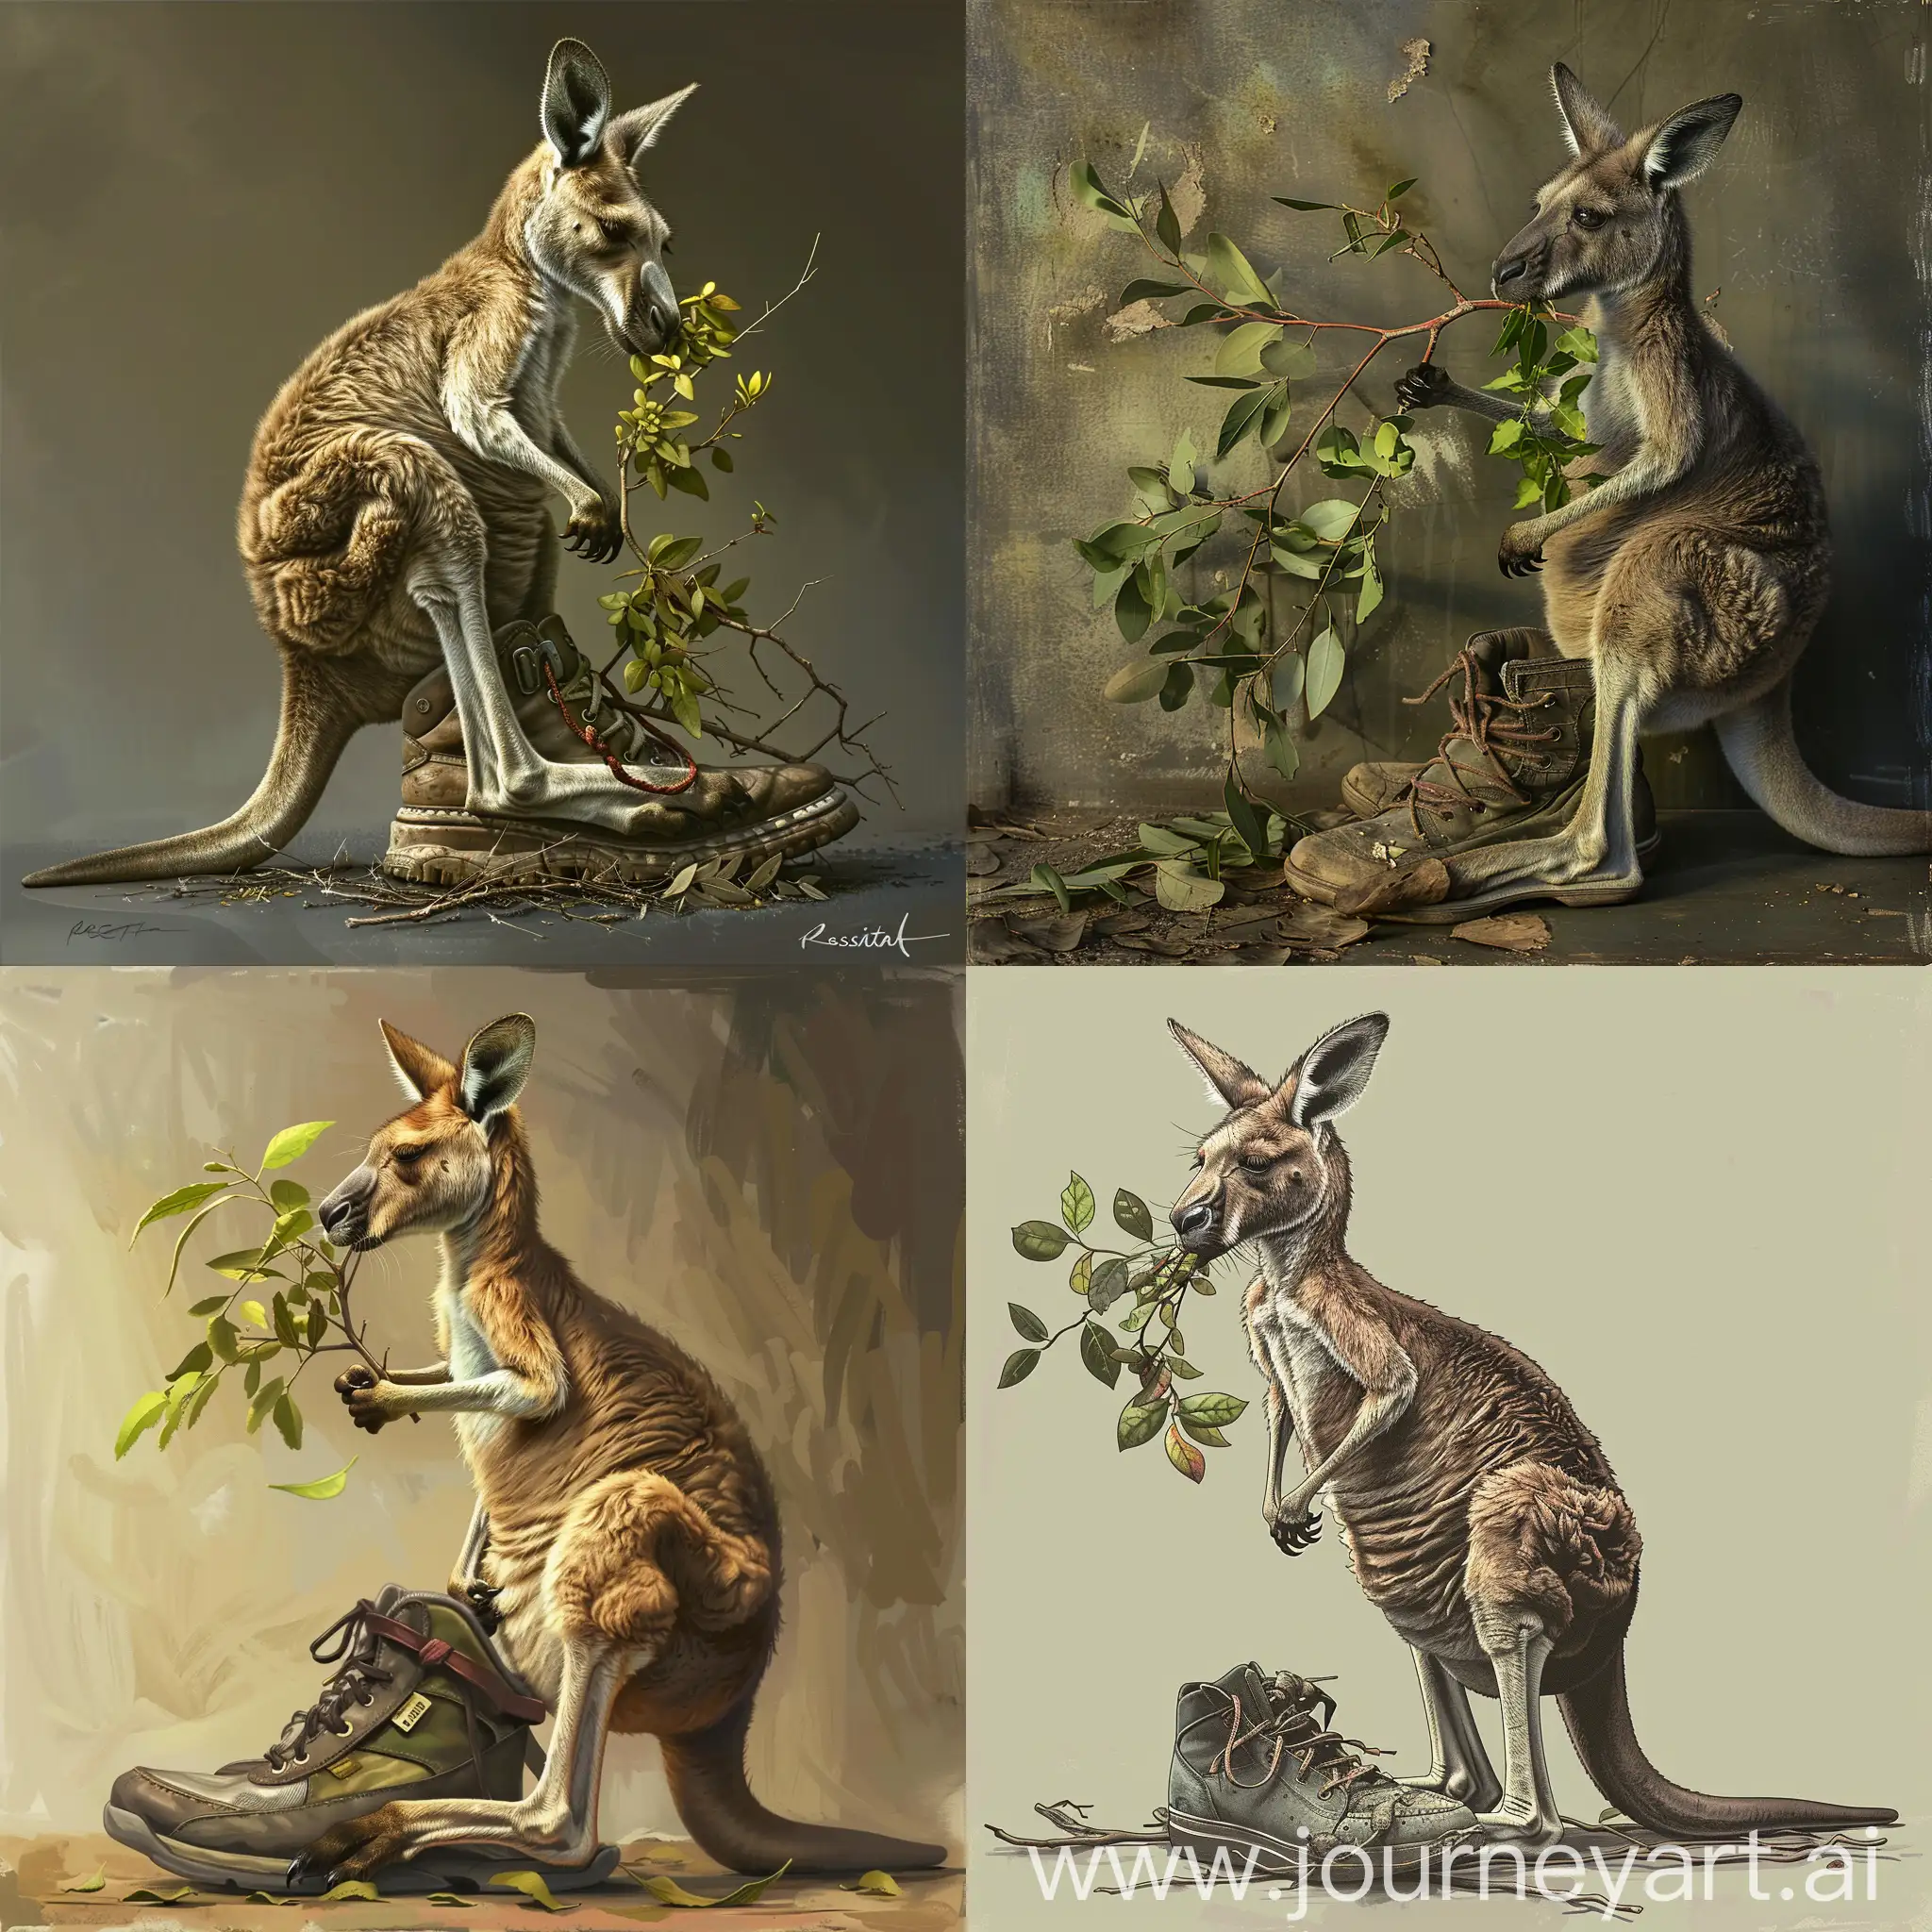 Kangaroo-Enjoying-Fresh-Foliage-on-a-Shoe-Whimsical-Rosita-Wachtmeister-Style-Art